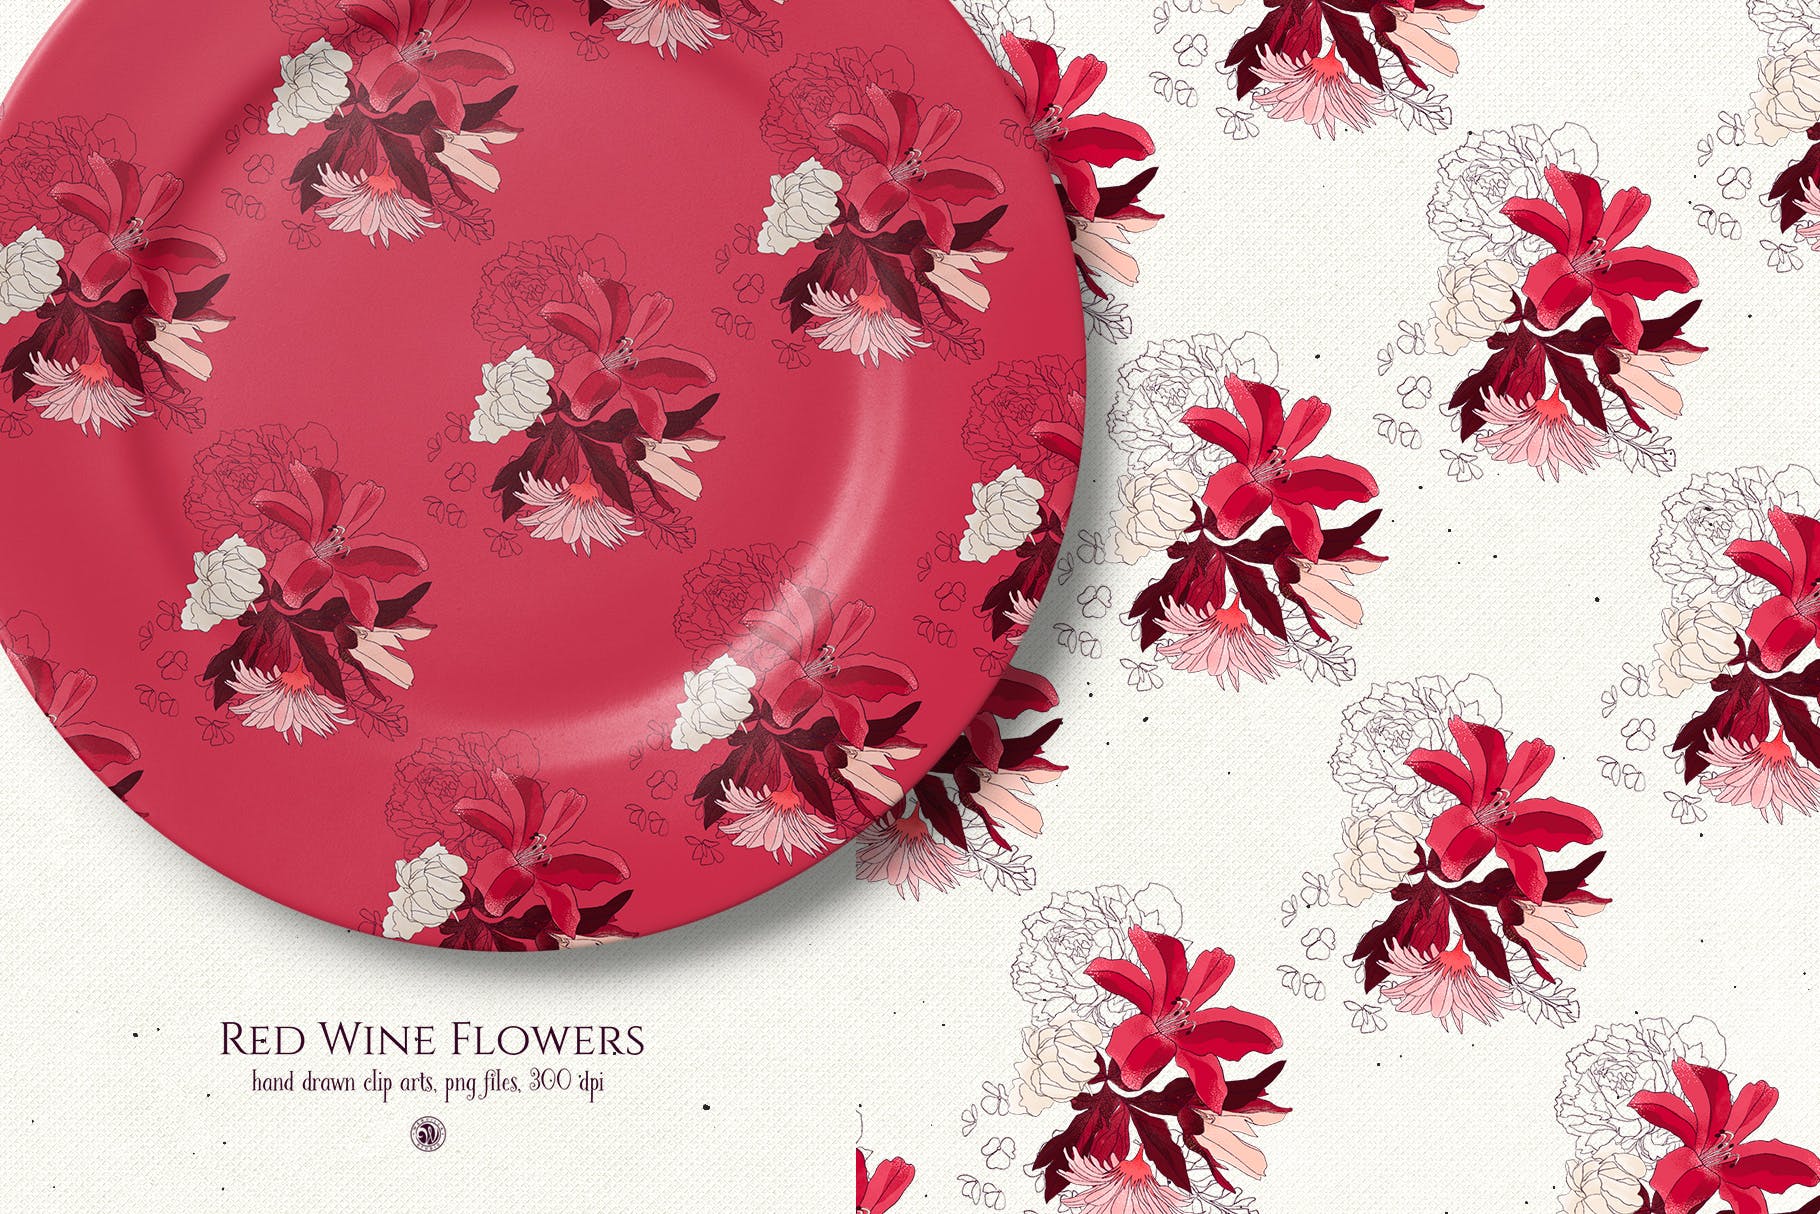 酒红色水彩手绘花卉PNG素材 Red Wine Flowers插图(4)